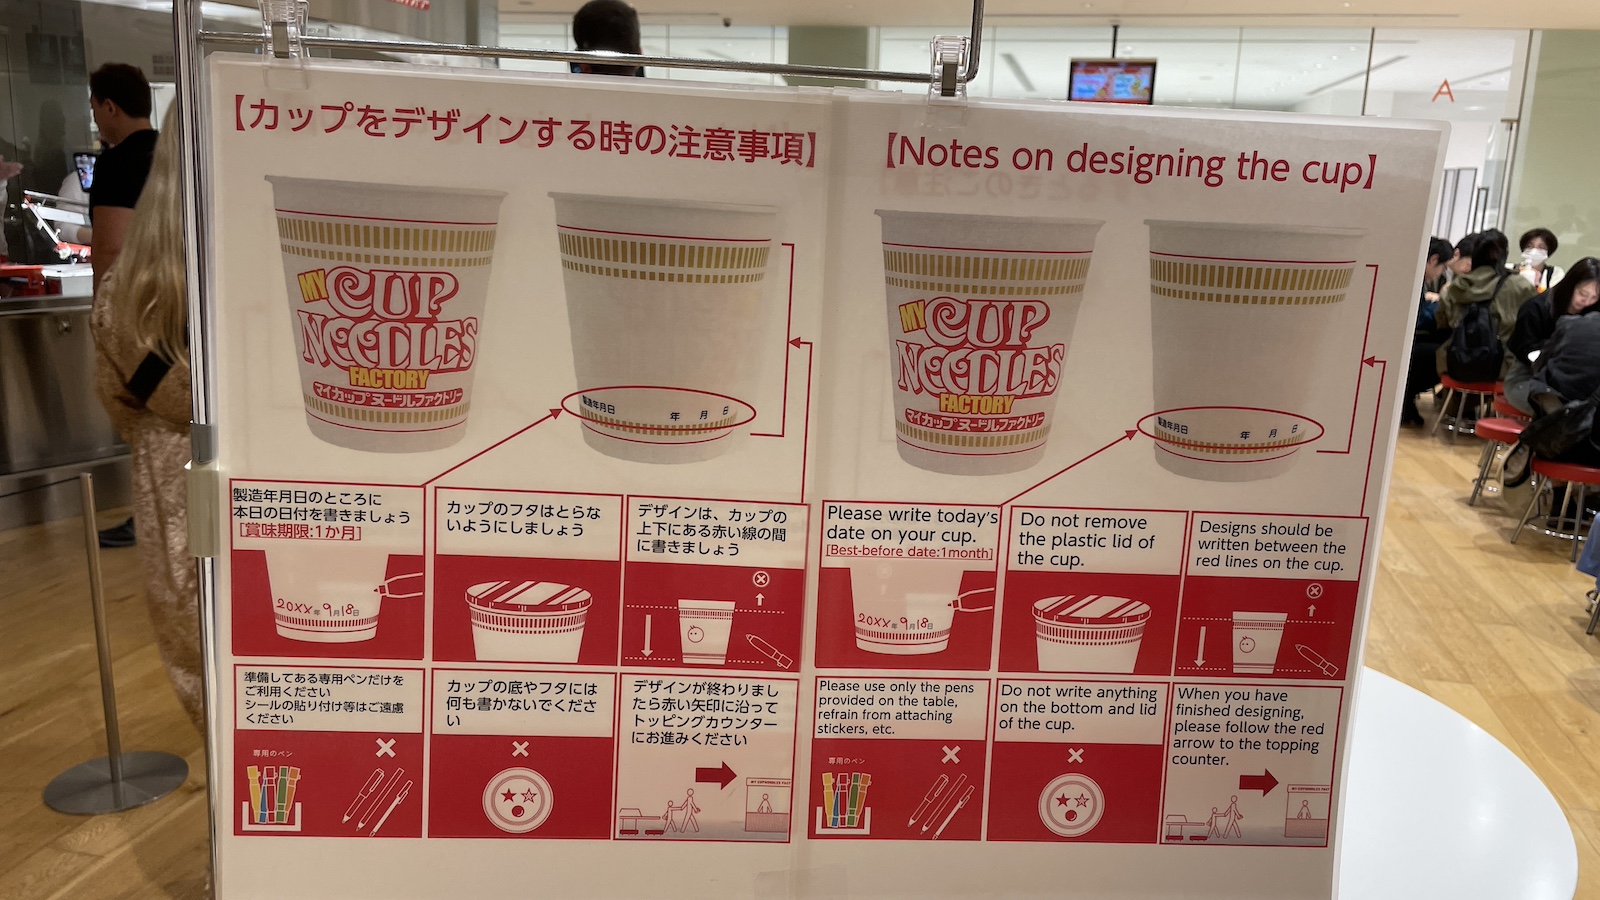 Virgin Australia Cup Noodles Museum Design Cup Instruction Sign